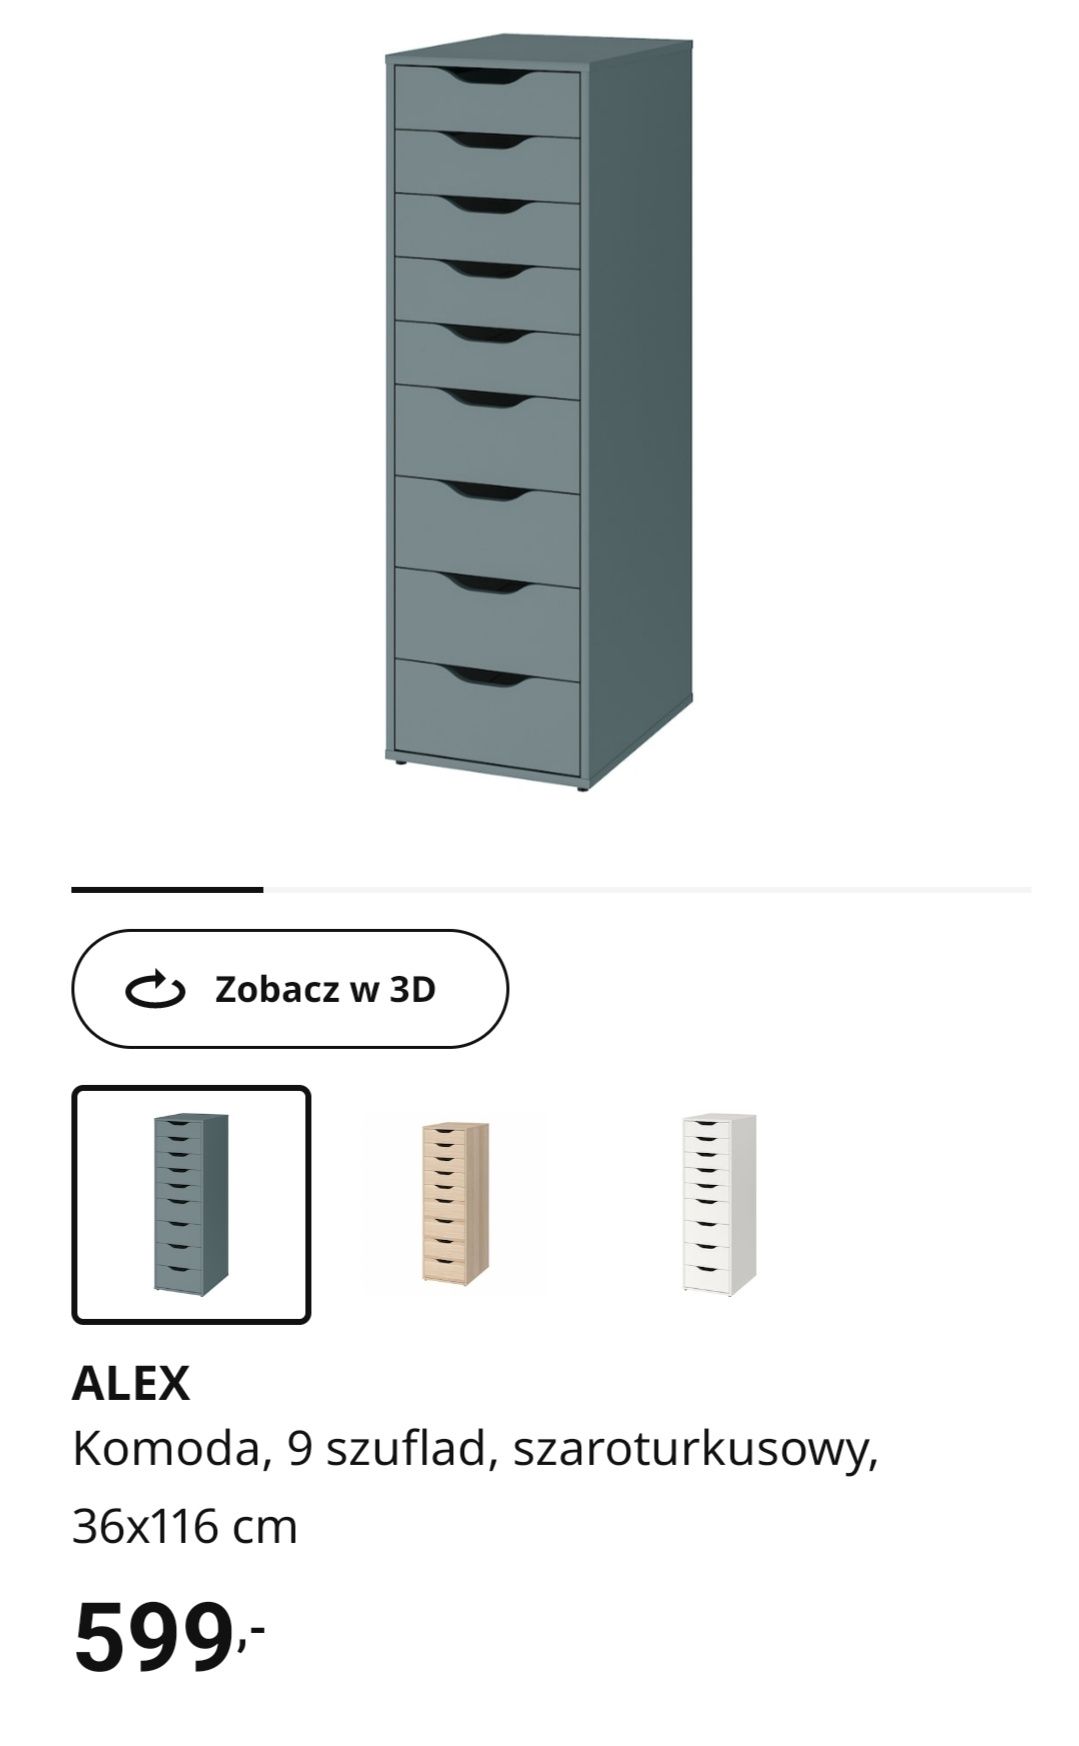 Komoda Ikea Alex 9 szuflad